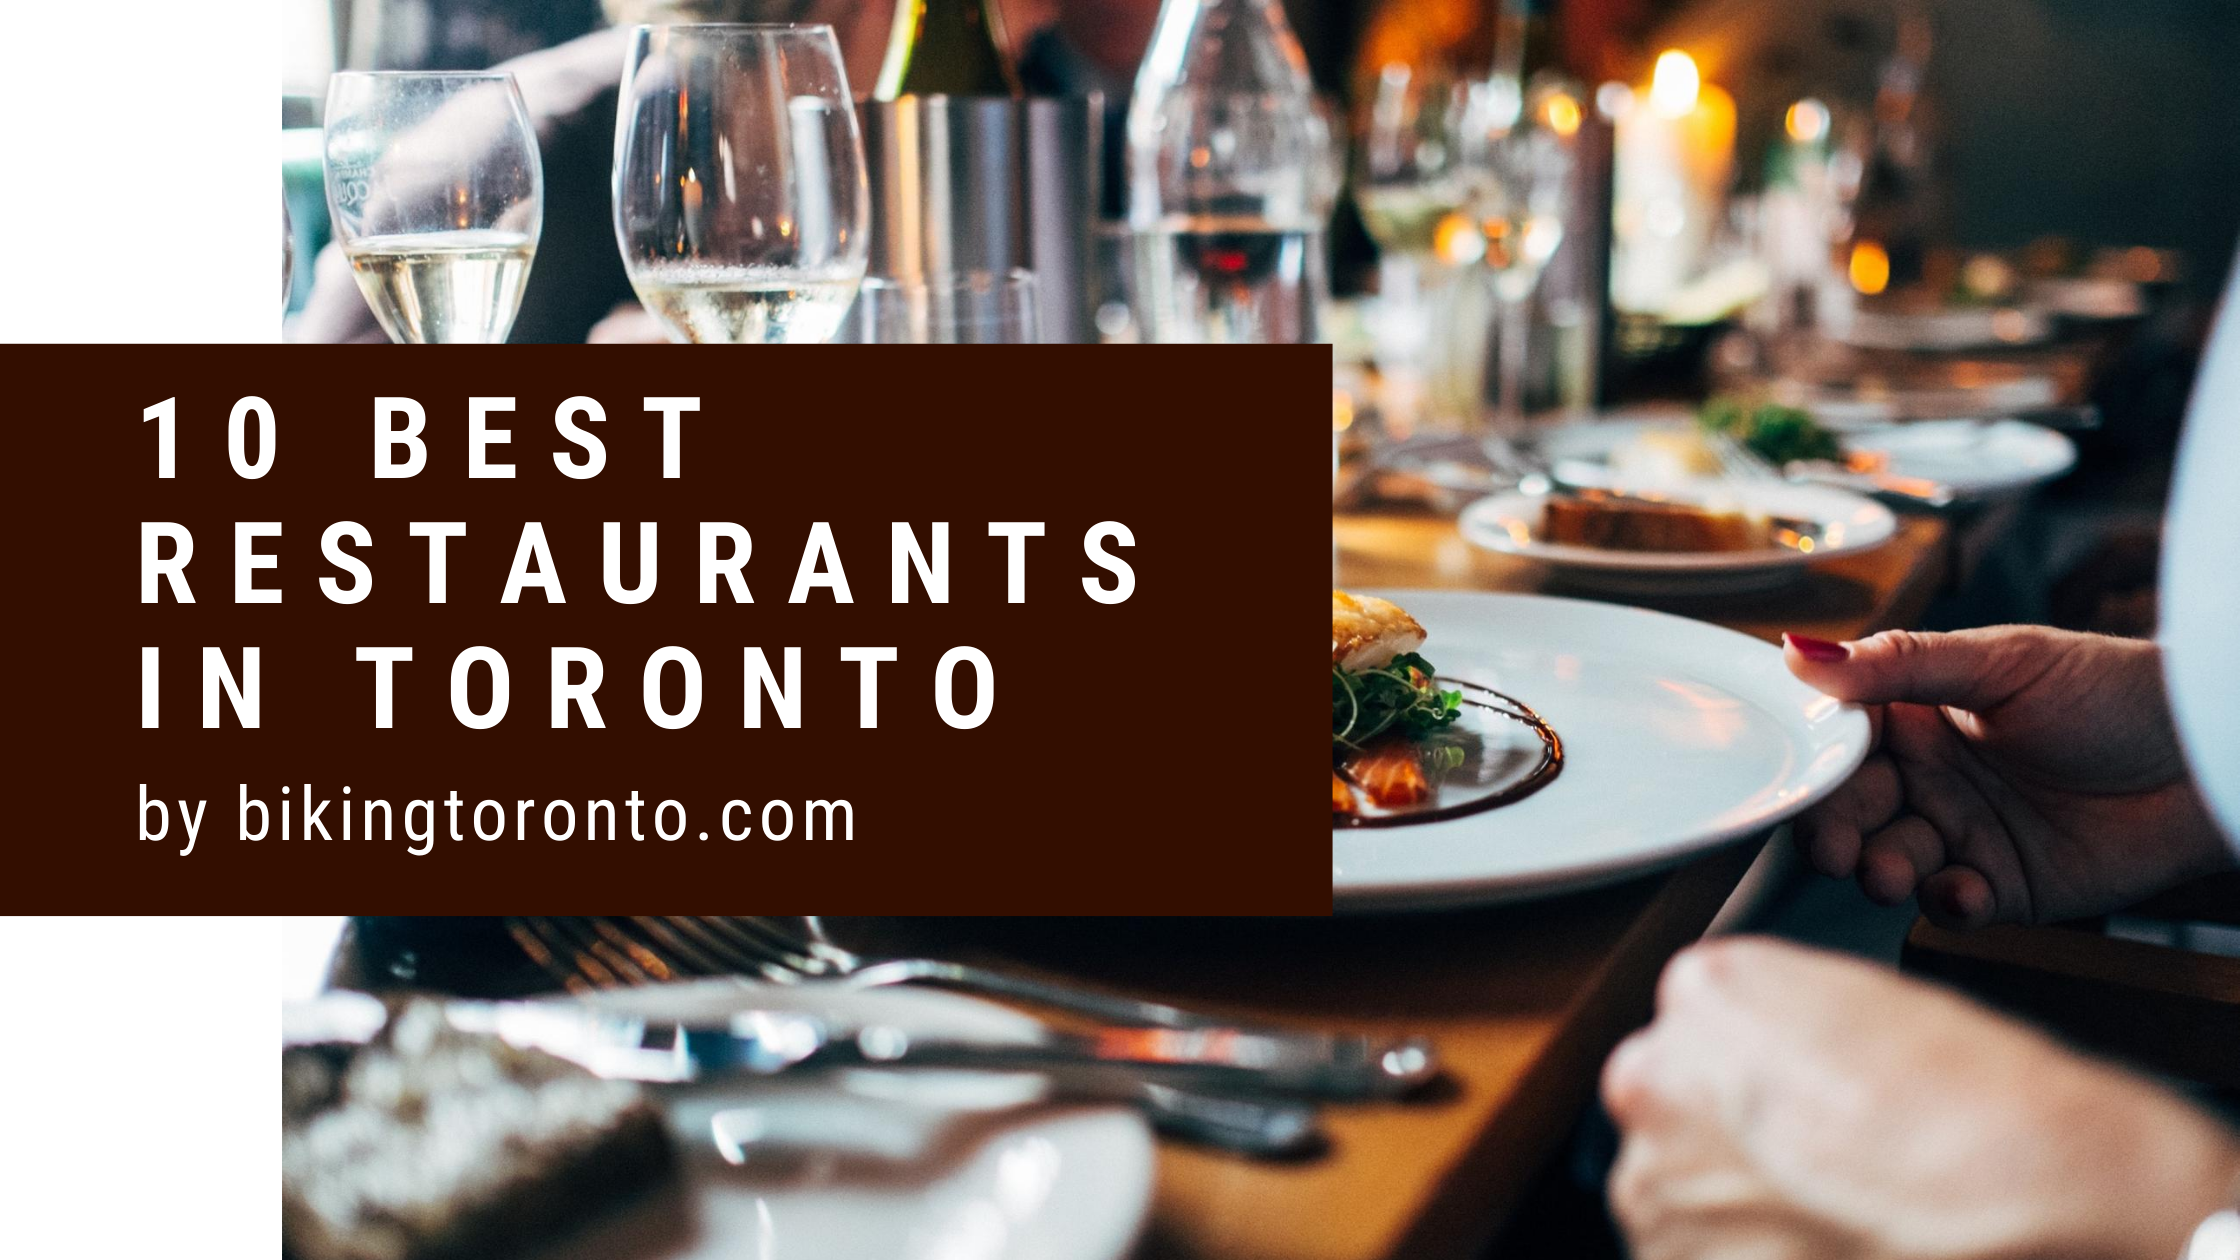 Top 10 BEST Restaurants in Toronto - Biking Toronto